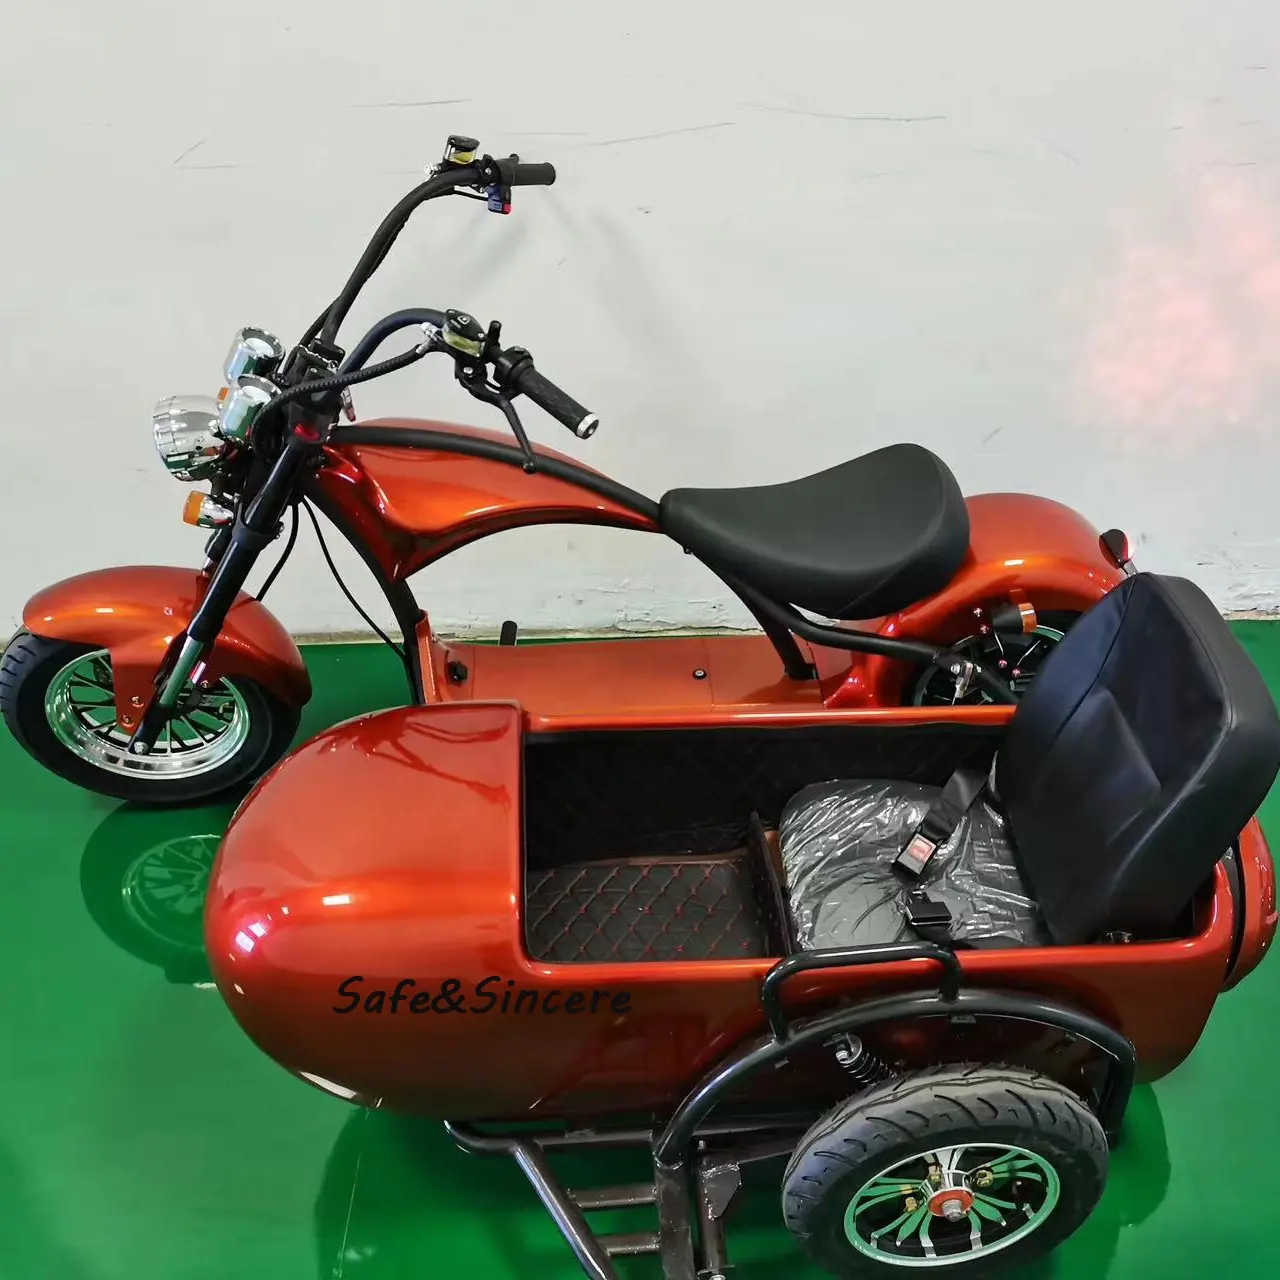 Magazzino usa/ue citycoco adulto all'ingrosso a buon mercato con secchio laterale batteria a due ruote elettrico e scooter elettrici moto ebike